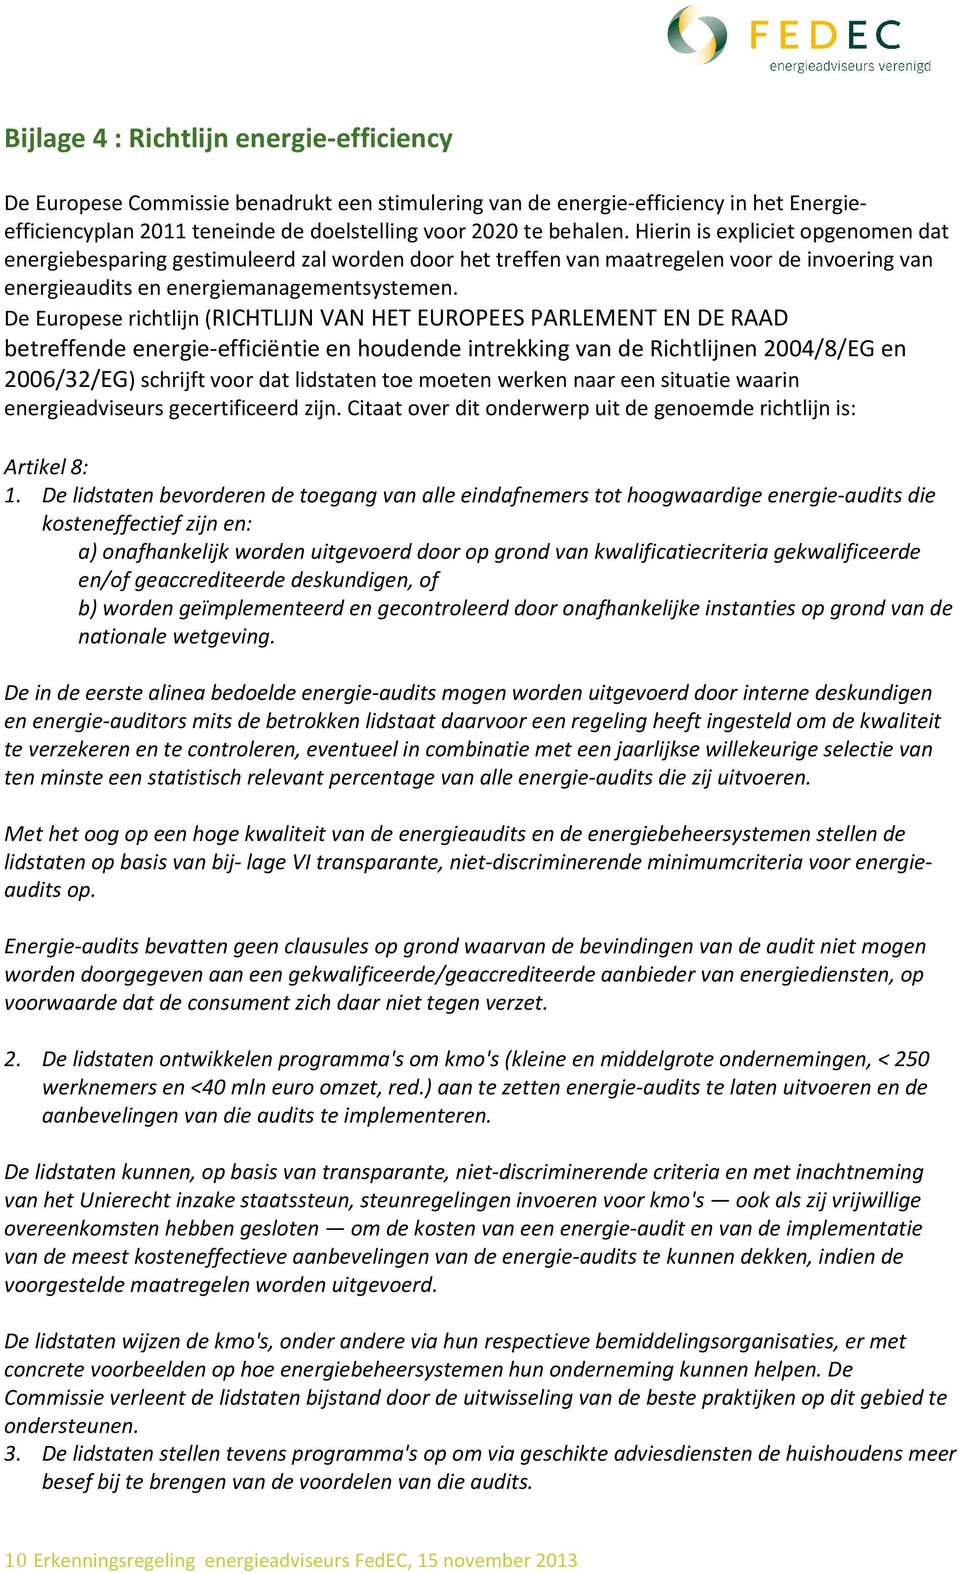 De Europese richtlijn (RICHTLIJN VAN HET EUROPEES PARLEMENT EN DE RAAD betreffende energie-efficiëntie en houdende intrekking van de Richtlijnen 2004/8/EG en 2006/32/EG) schrijft voor dat lidstaten